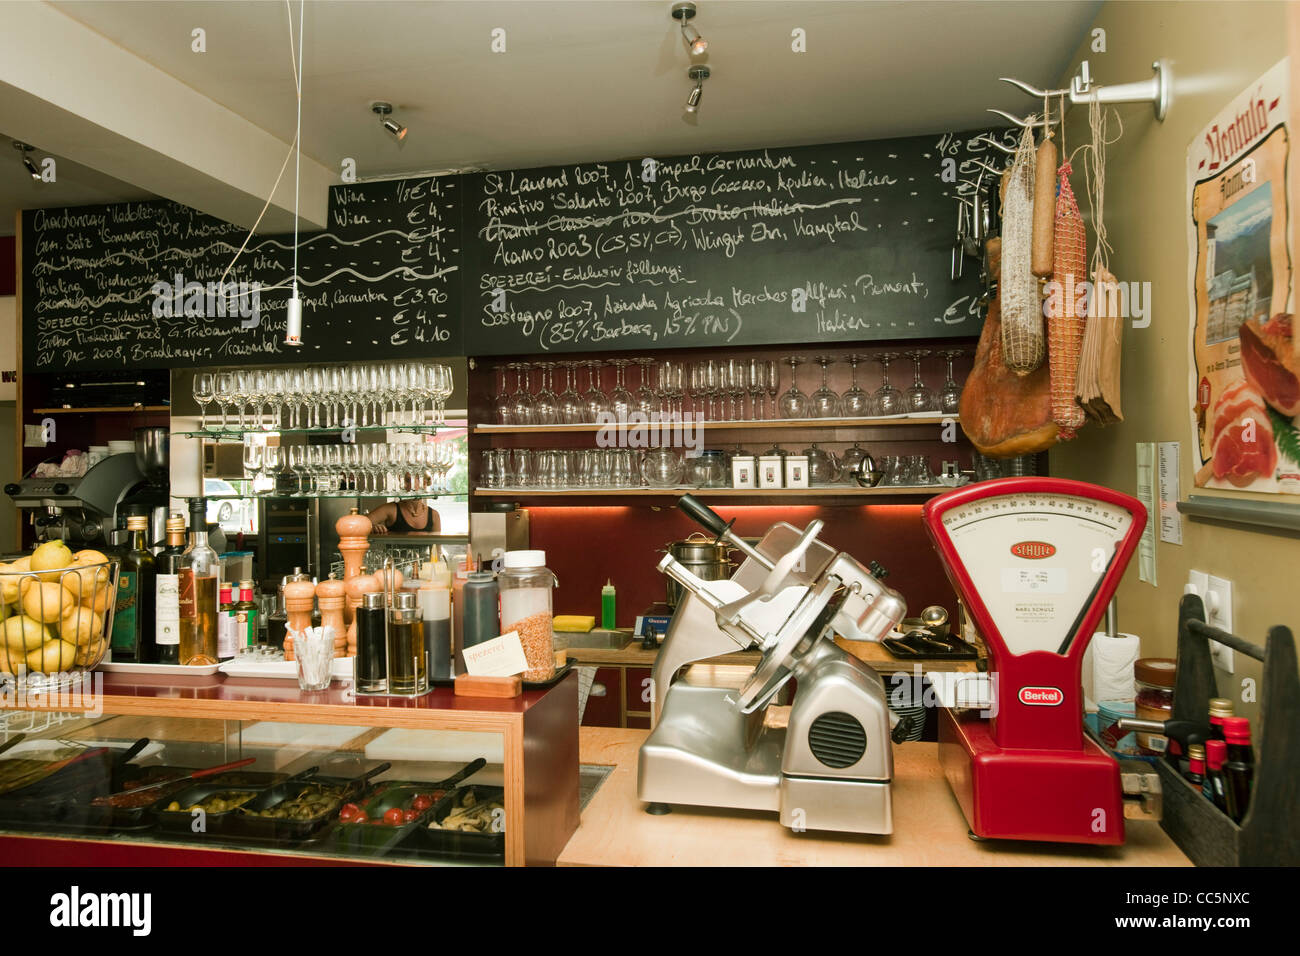 Österreich, Wien 2, Spezerei, Karmeliterplatz 2. Weine und Spezialitäten und eine Bar mit kleinen Gerichten. Stock Photo